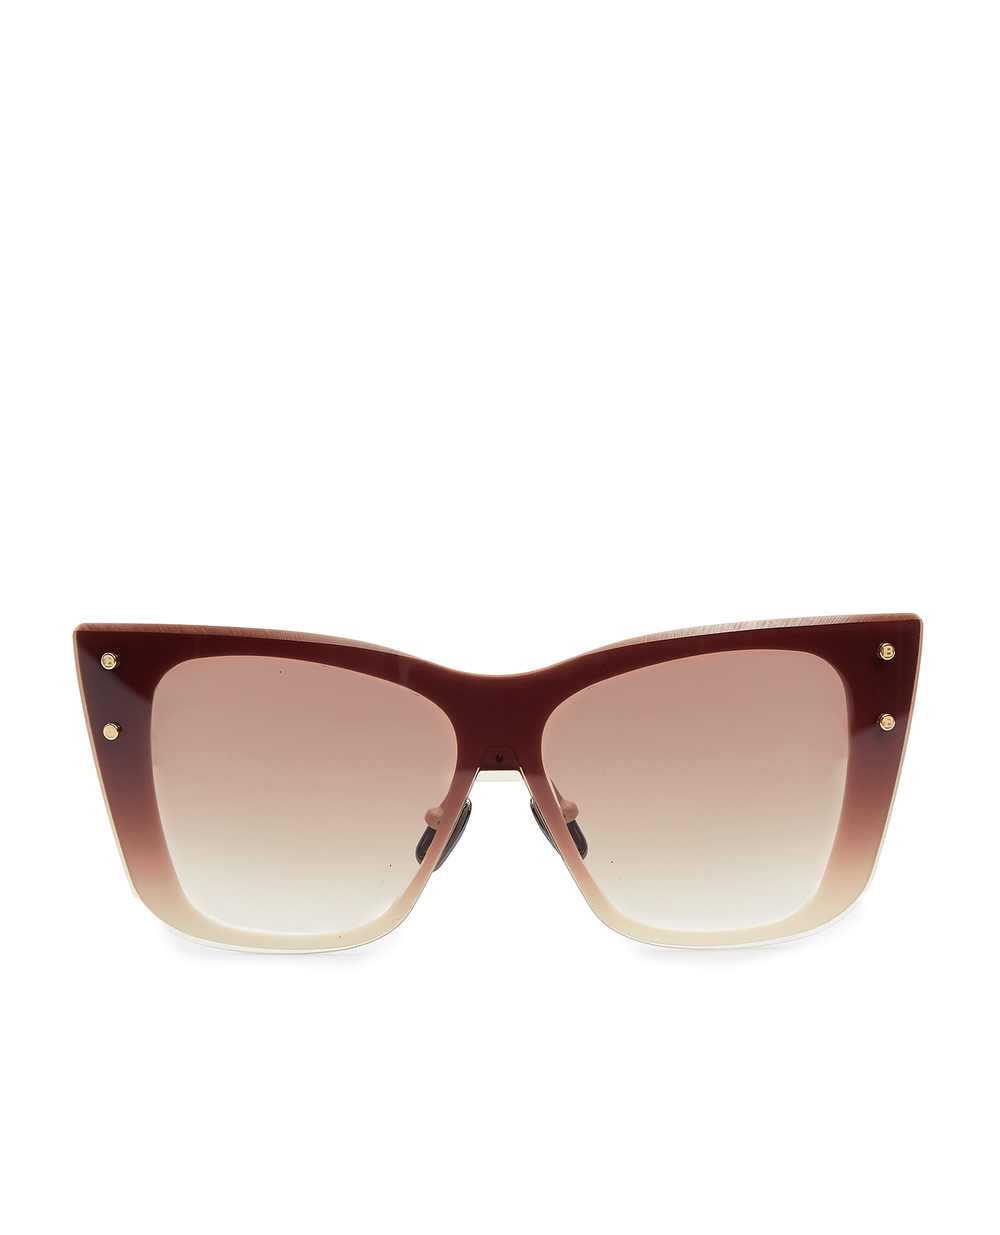 Солнцезащитные очки Balmain BPS-106B-150, коричневый цвет • Купить в интернет-магазине Kameron